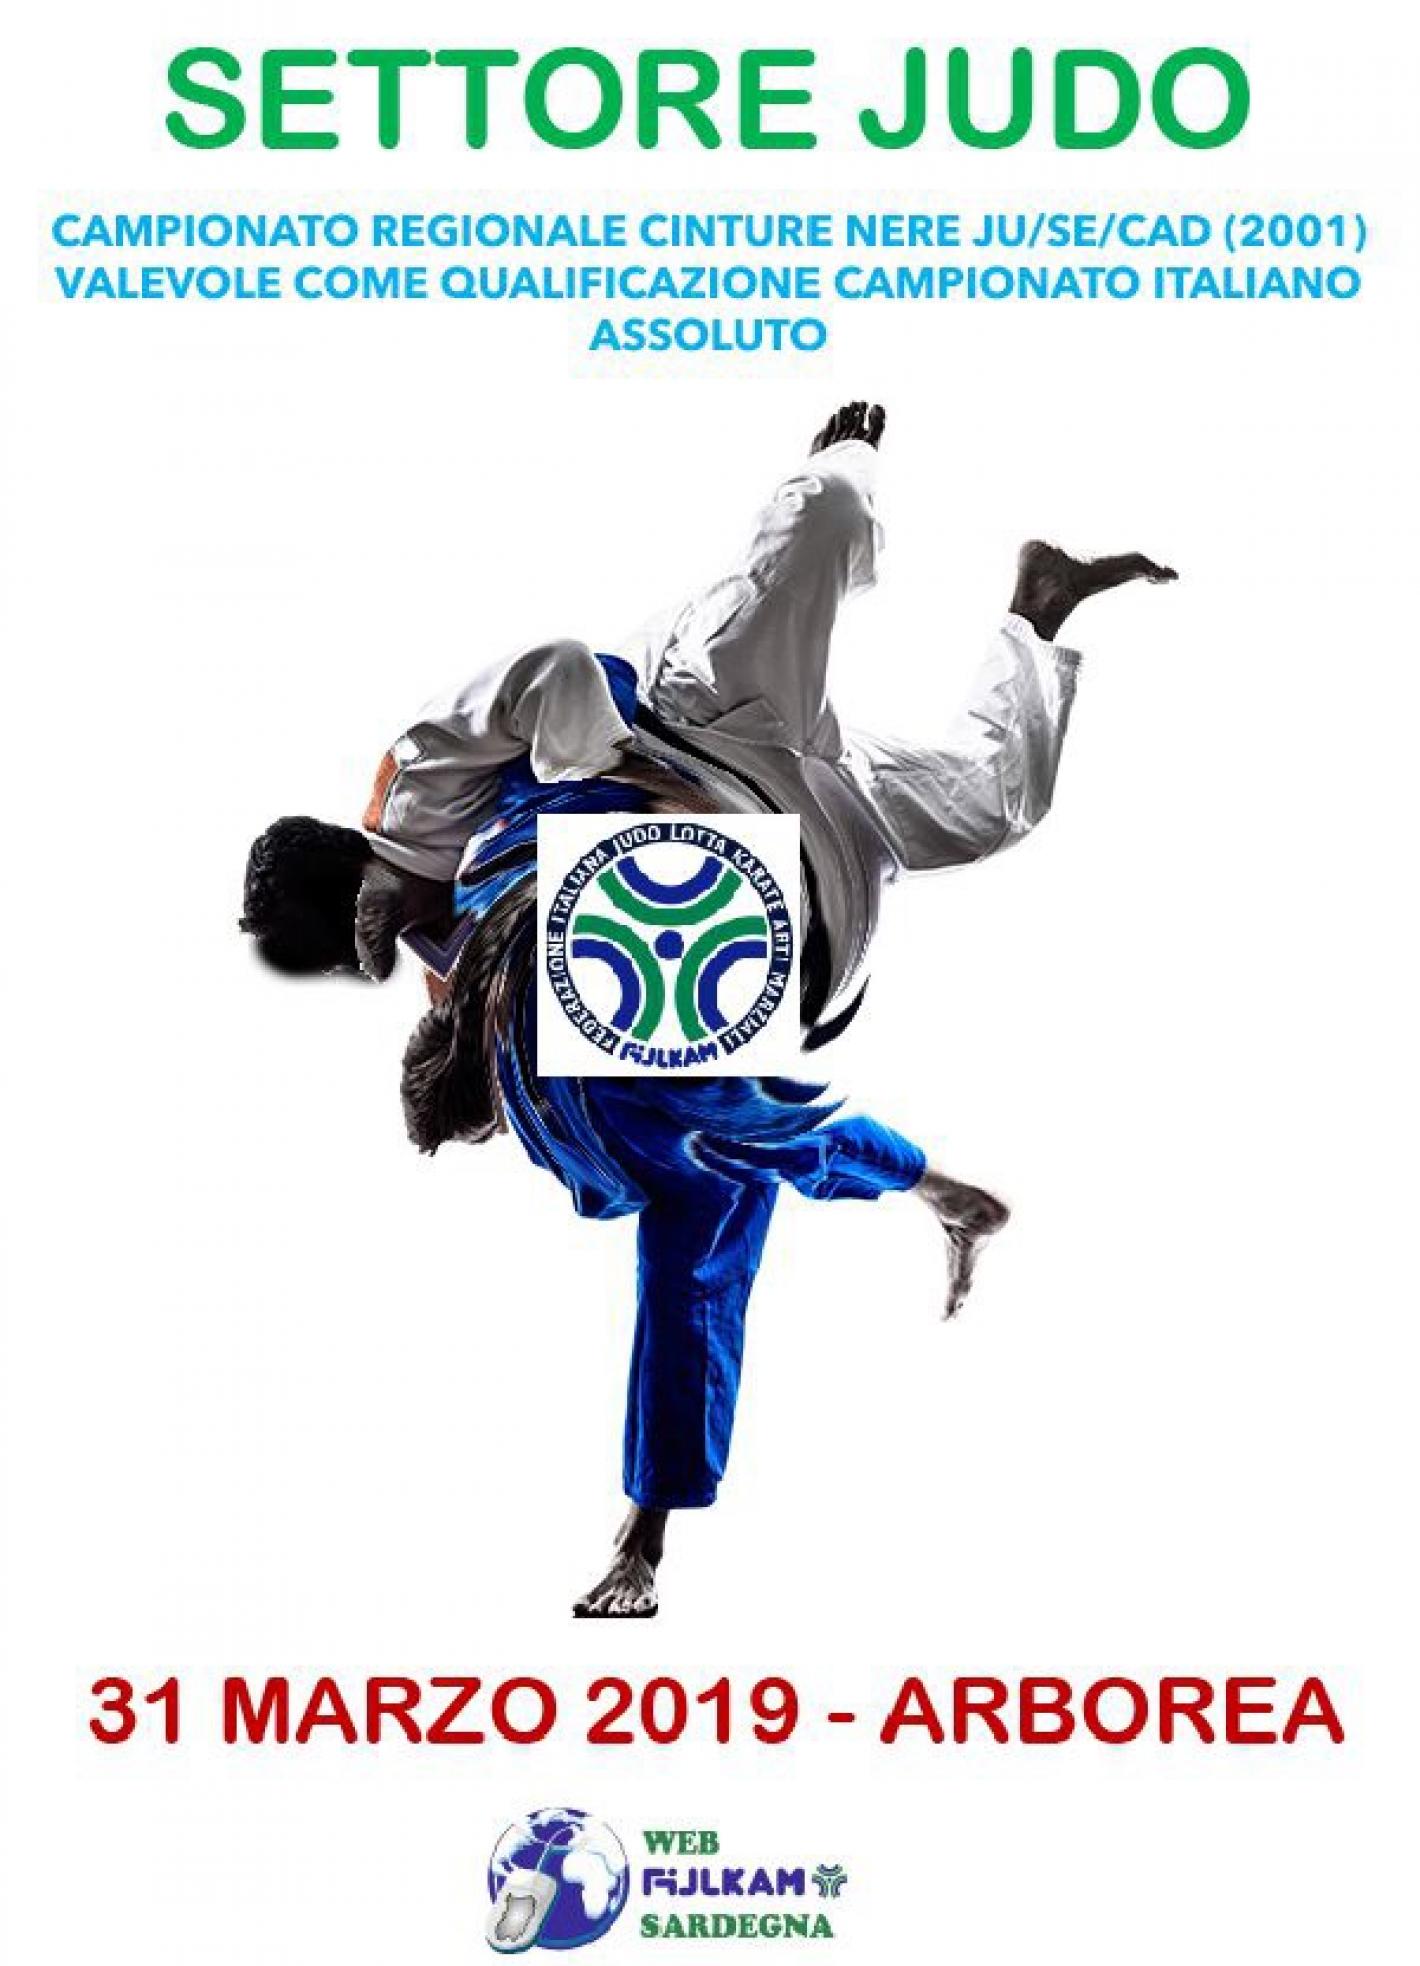 images/sardegna/Settore_Judo/2019/Qualificazioni_Campionati_Italiani_valevole_come_Campioato_Regionale_2019/medium/Loc.Camp.Regionale_JUDO_2019.jpeg